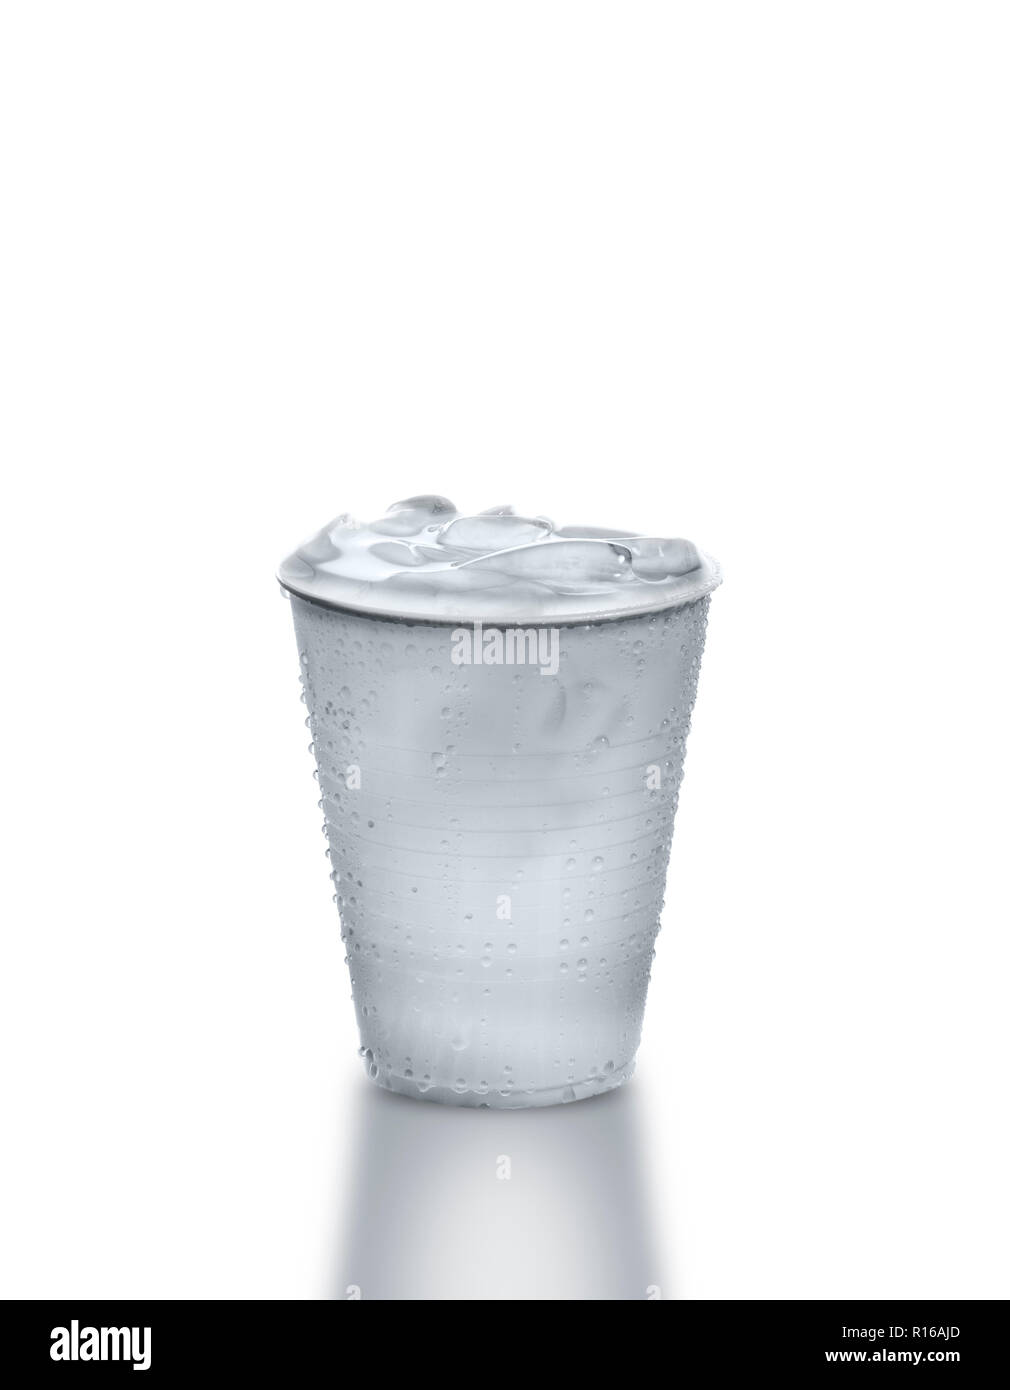 Vaso de plástico lleno de agua helada contra el fondo blanco. Foto de stock